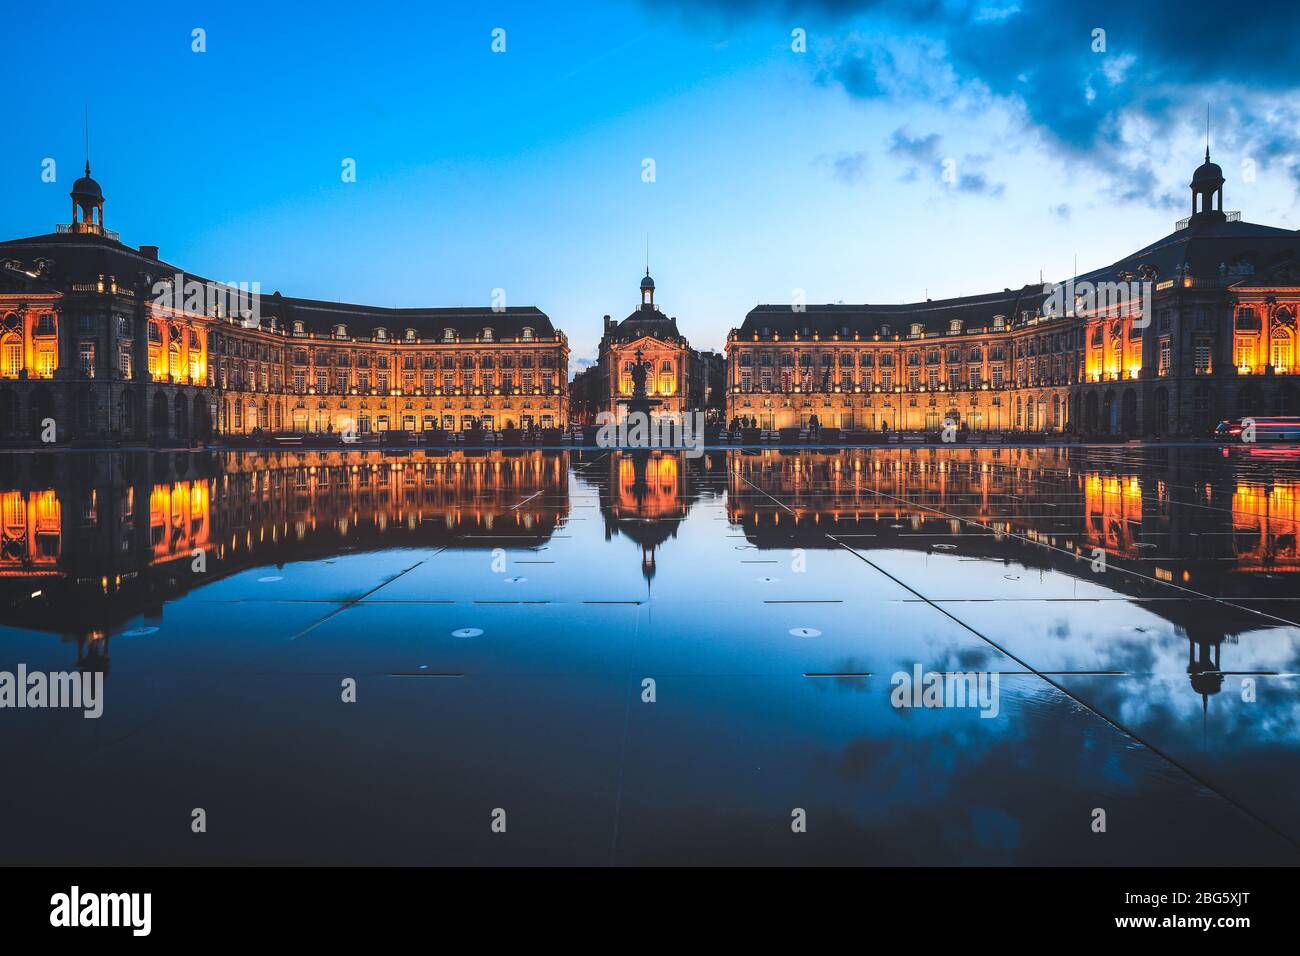 Spiegelbild des Place De La Bourse und der Straßenbahn in Bordeaux, Frankreich. Ein UNESCO-Weltkulturerbe Stockfoto